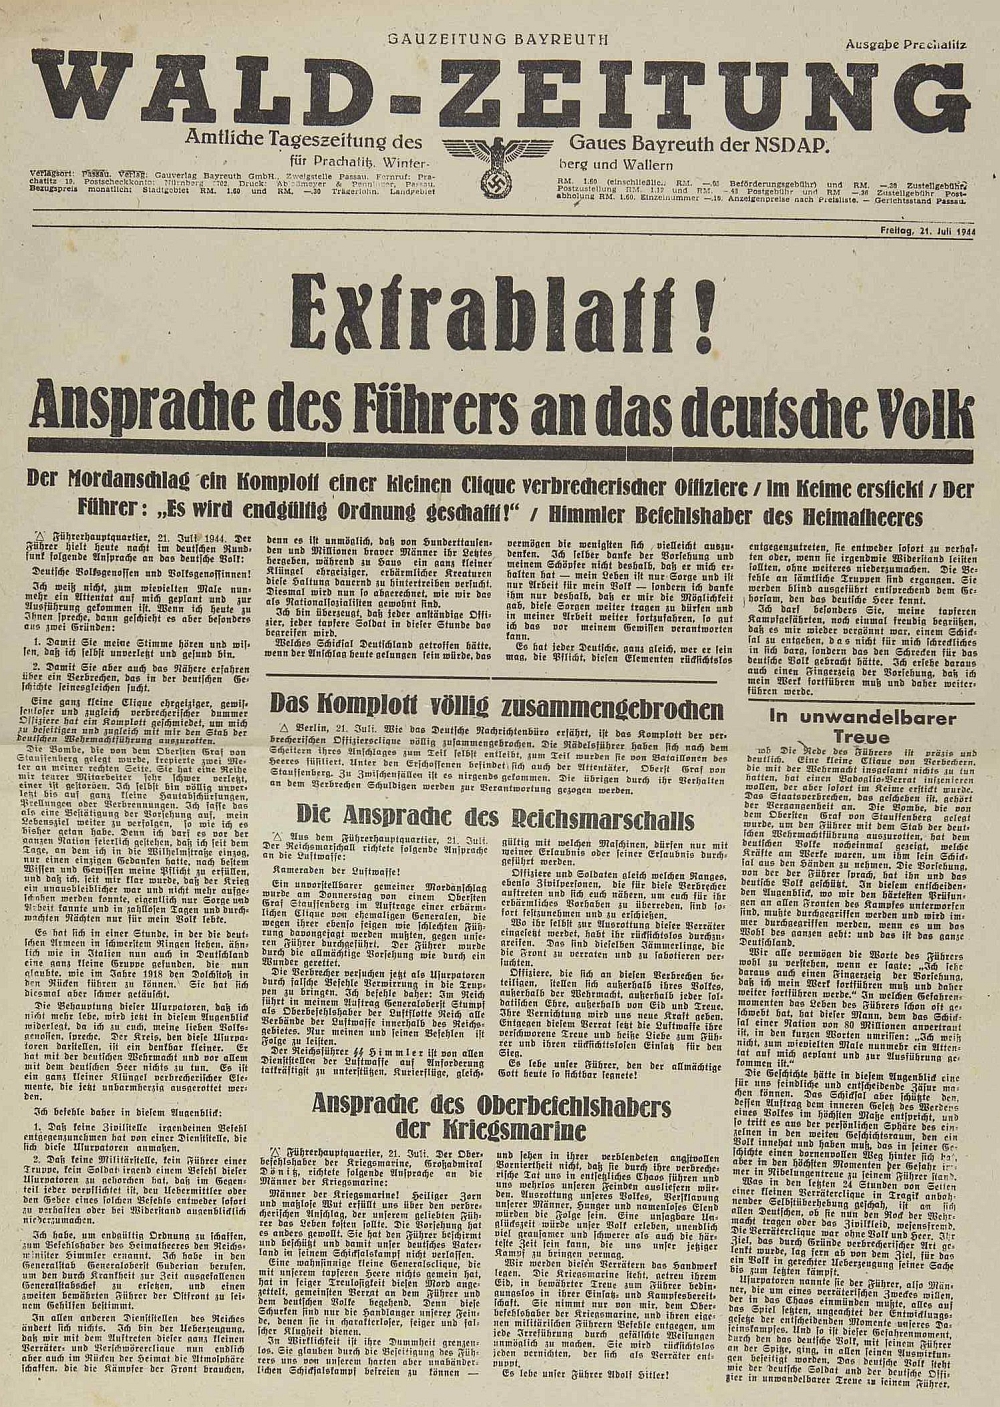 Do prachatické německé školní kroniky vlepená titulní strana deníku "Wald-Zeitung", župního tiskového orgánu NSDAP "Gau Bayreuth" (Prachatice k té župě toho roku 1944 ještě patřily!), po atentátu na Hitlera ani
neuvádějící jména "zločinných kreatur"